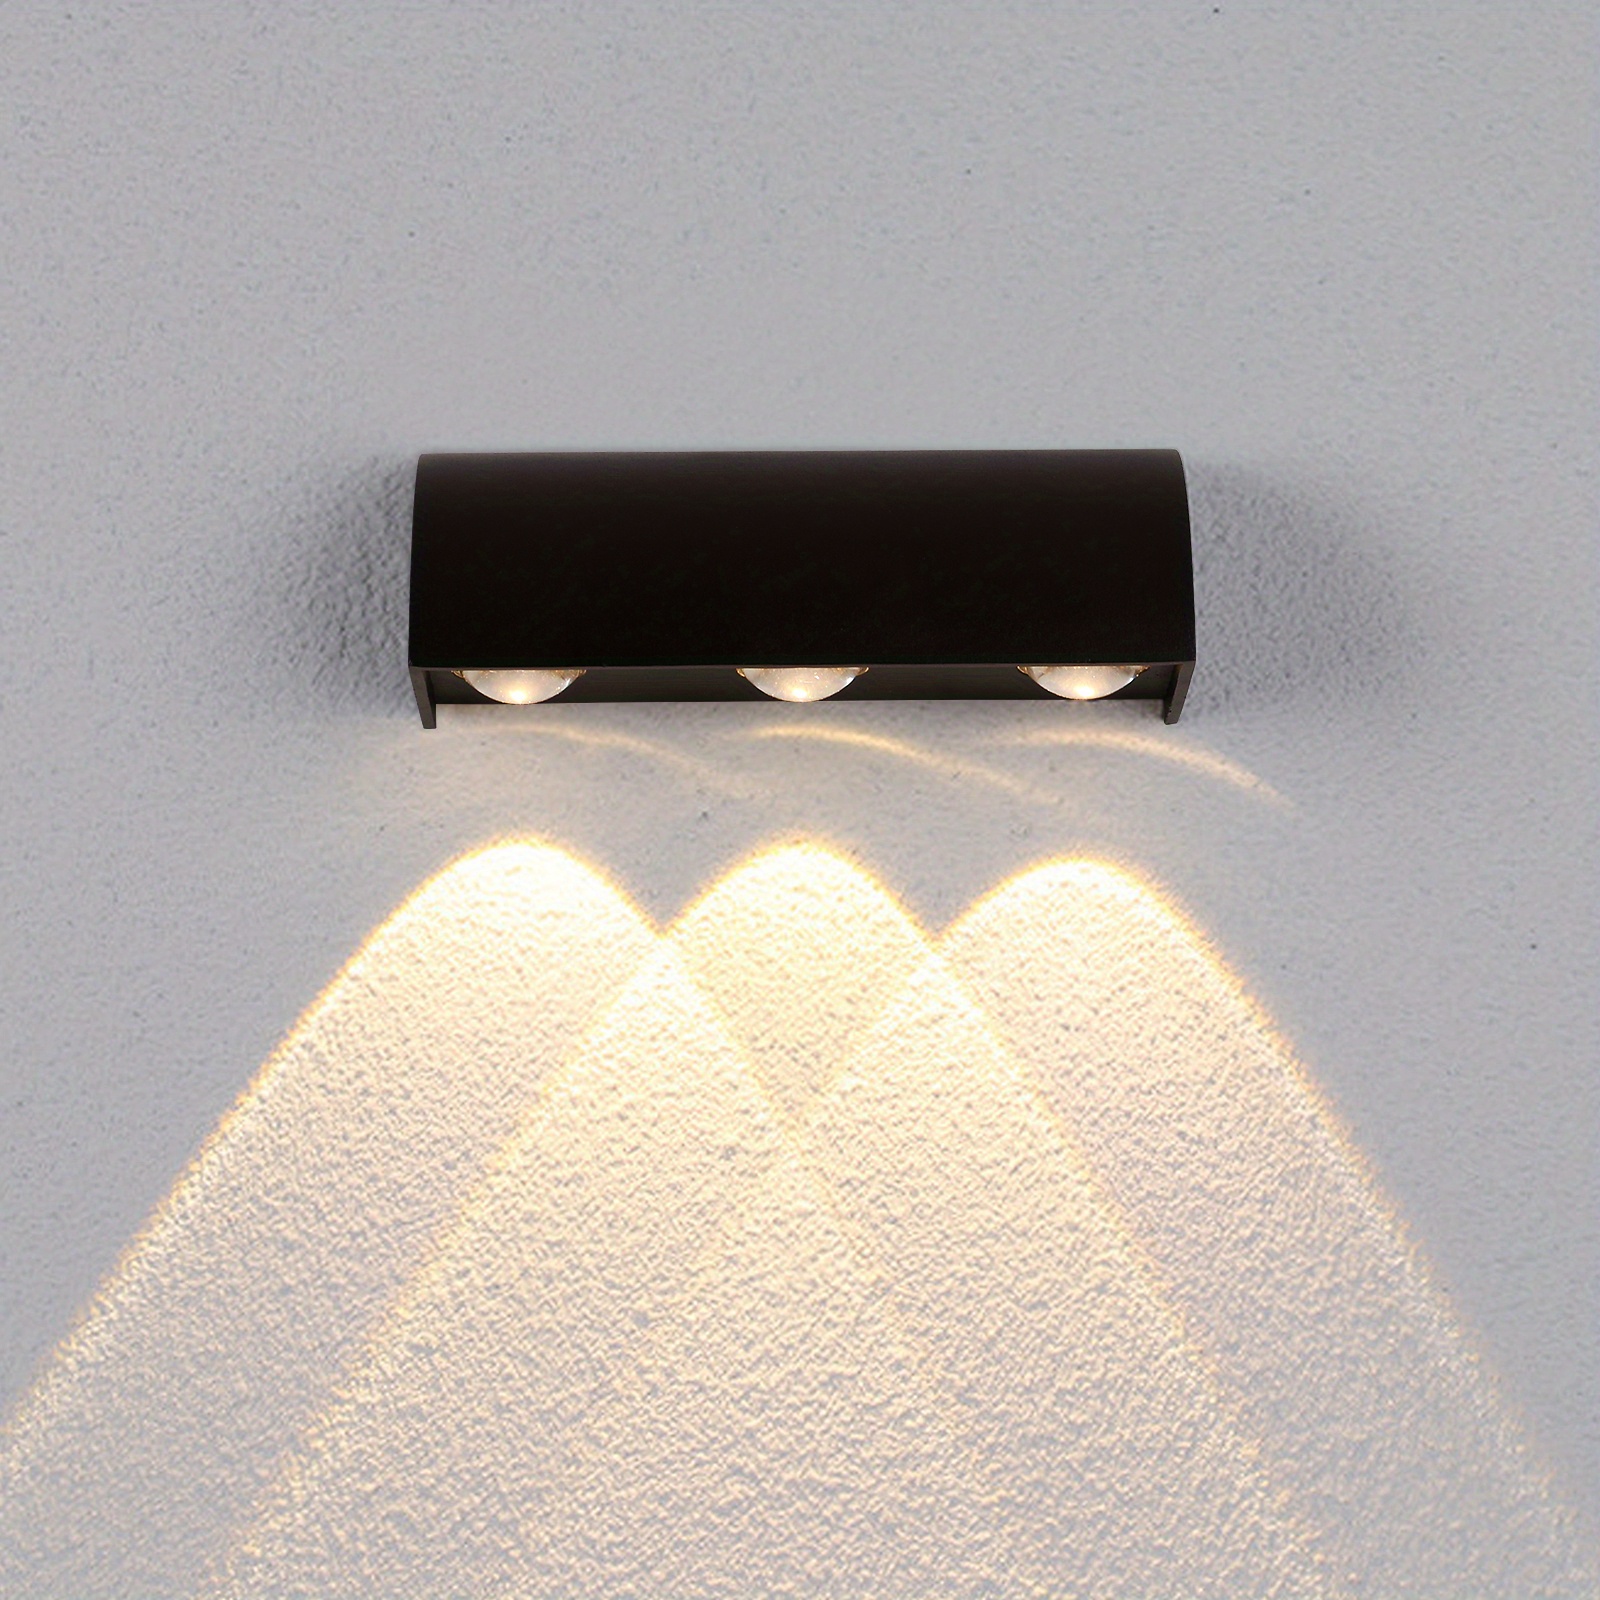 Applique murale LED Lampe exterieur Noir Anthracite 360LM 3000K blanc chaud  Lumière Aluminium IP65 étanche Luminaire